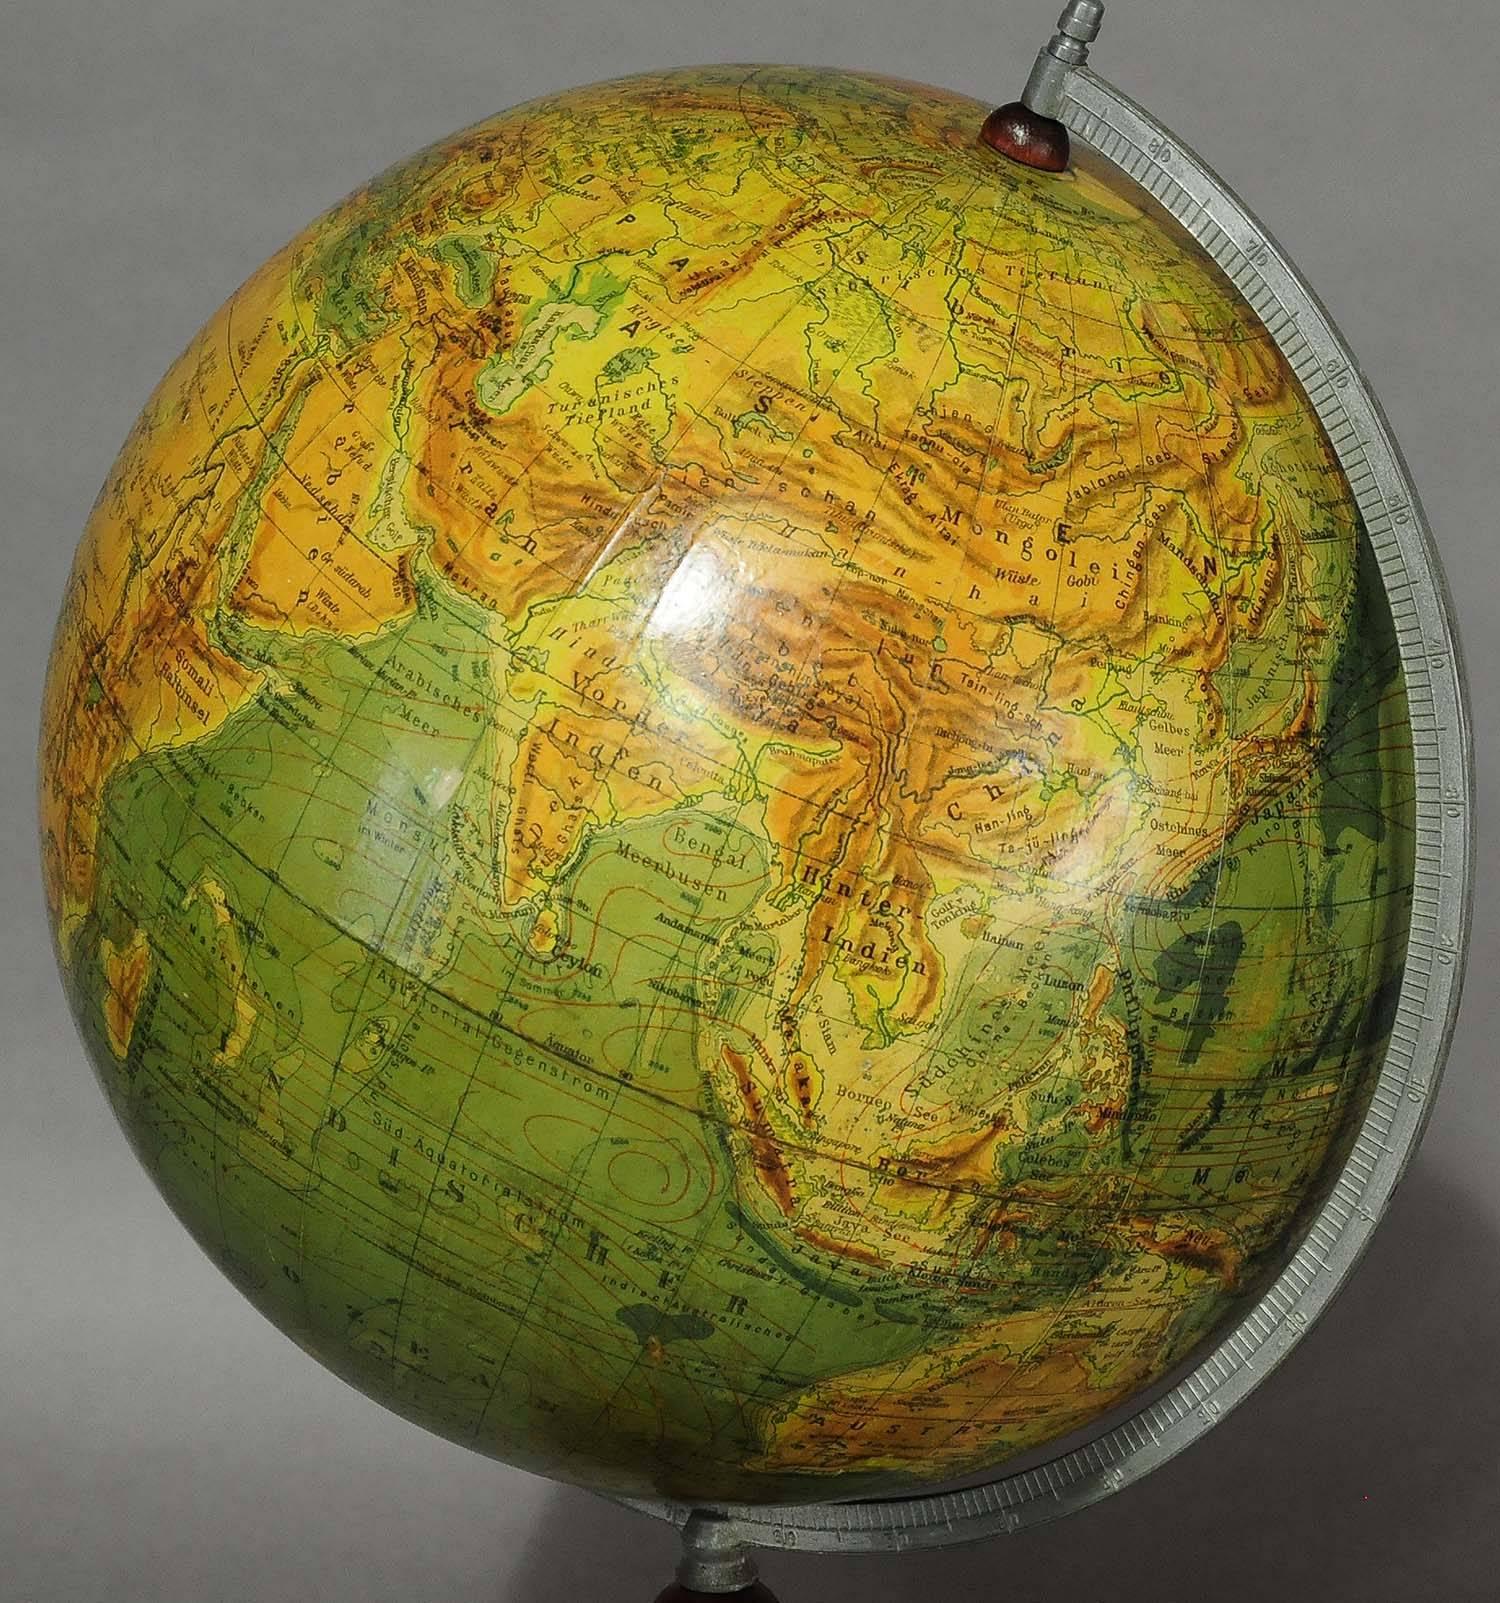 German Antique Physical Earth Globe by Paul Raeth, Leipzig